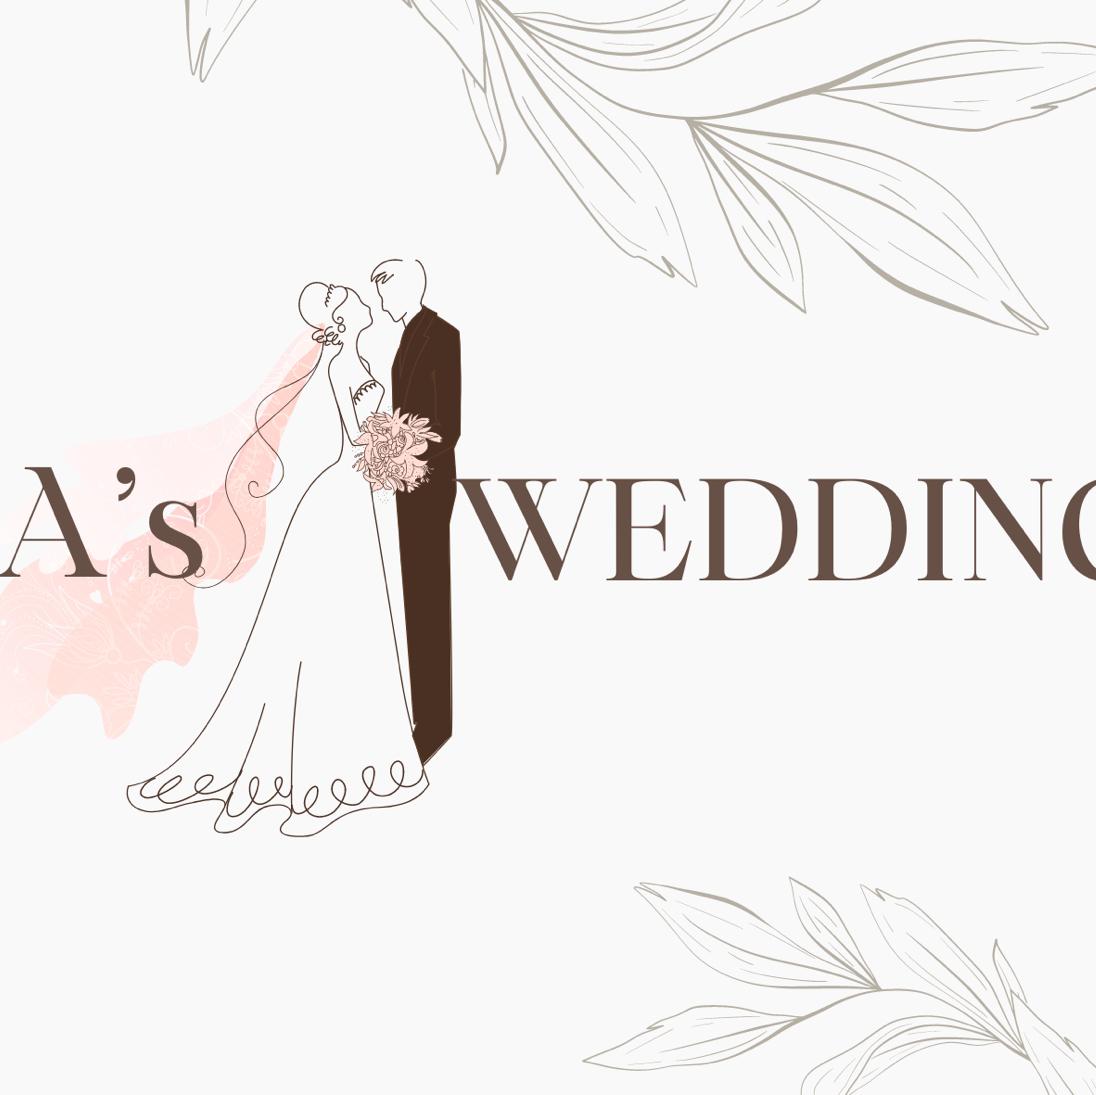 A’s wedding 💐